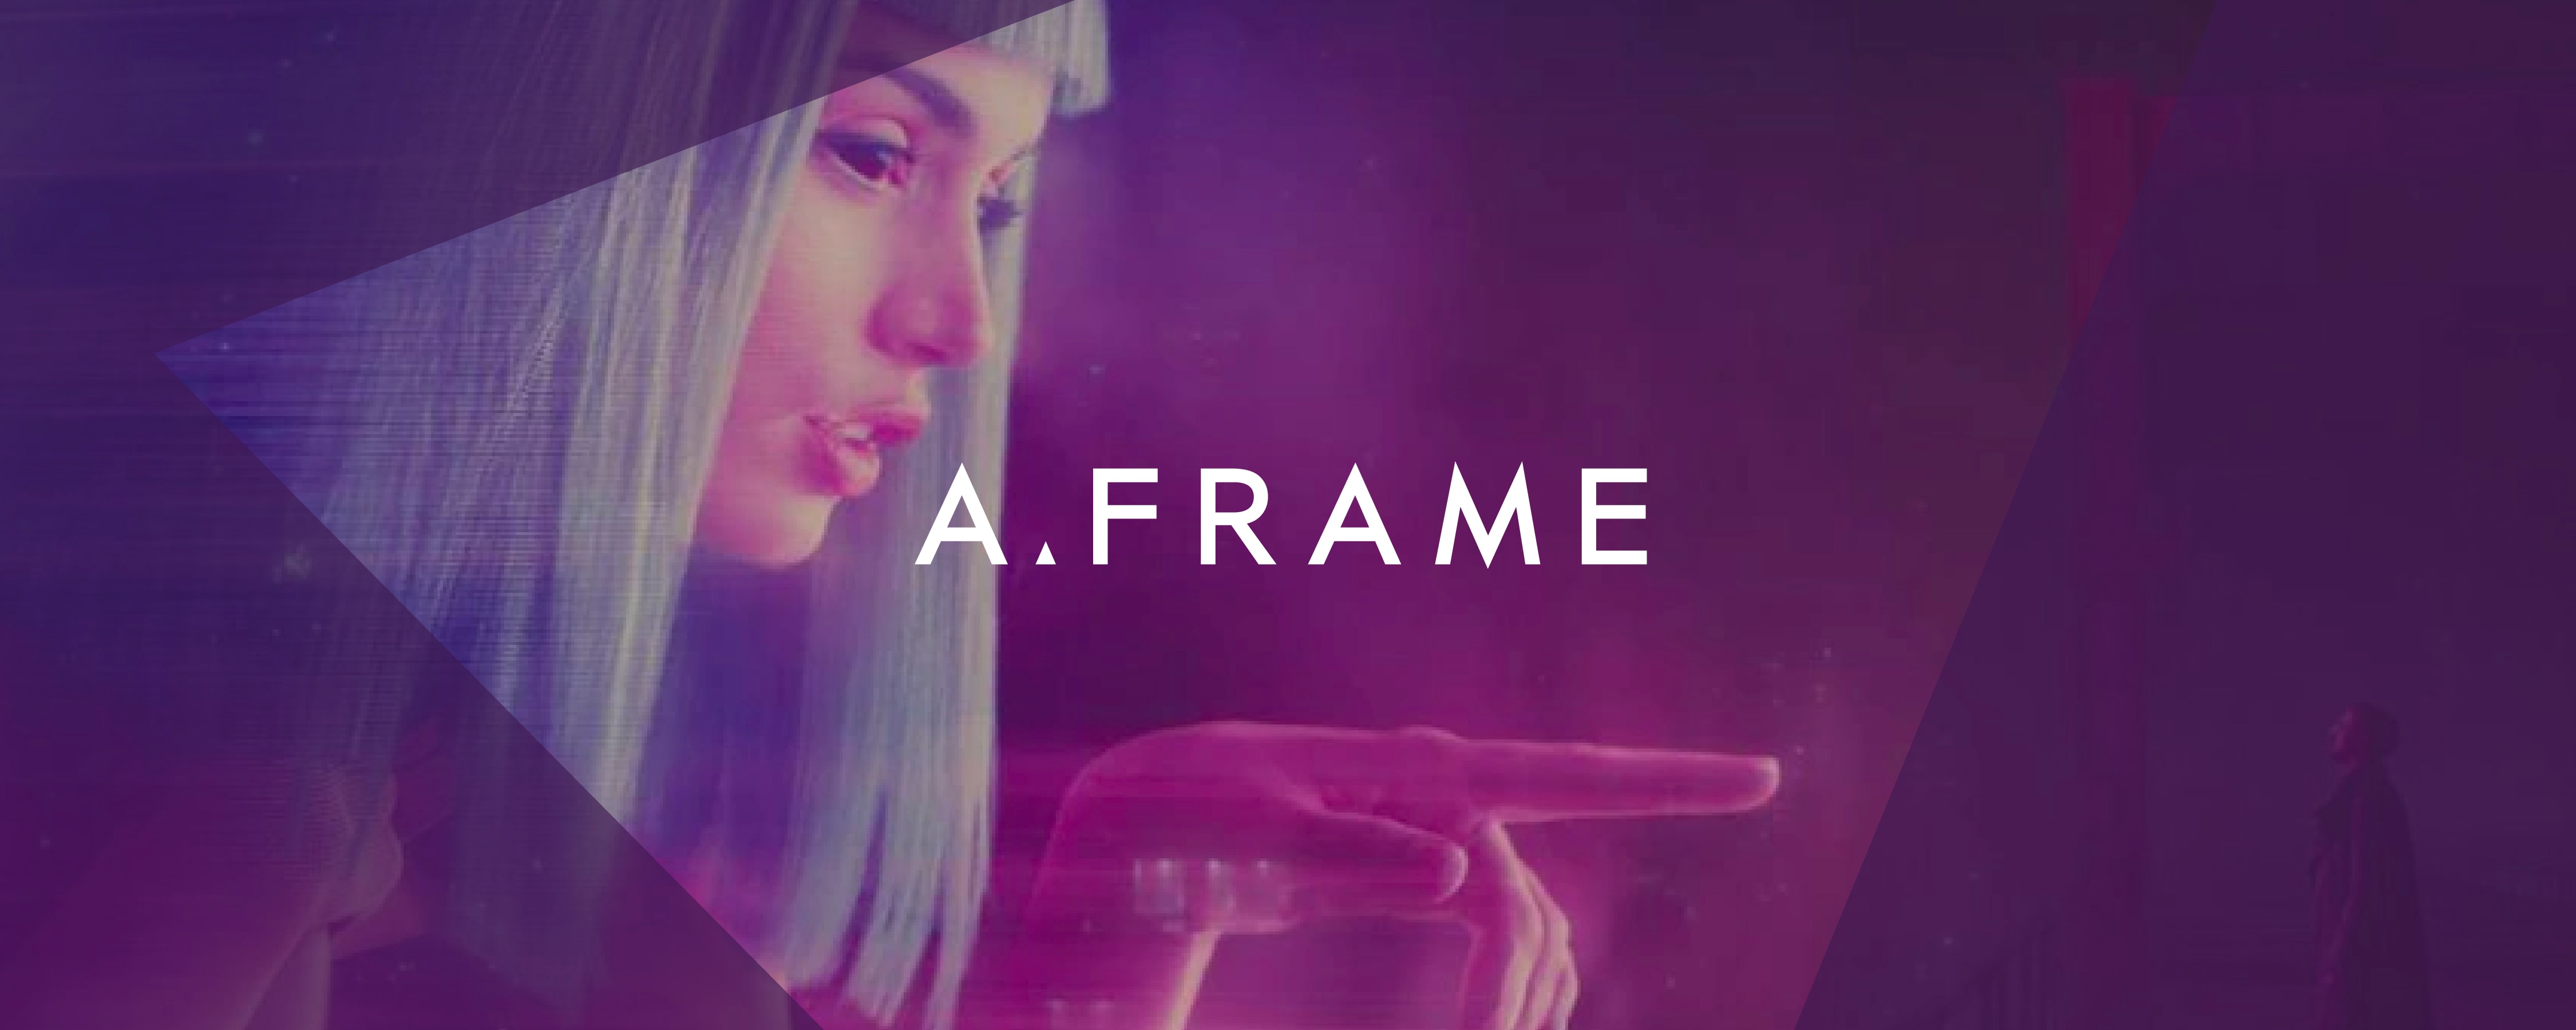 A.frame